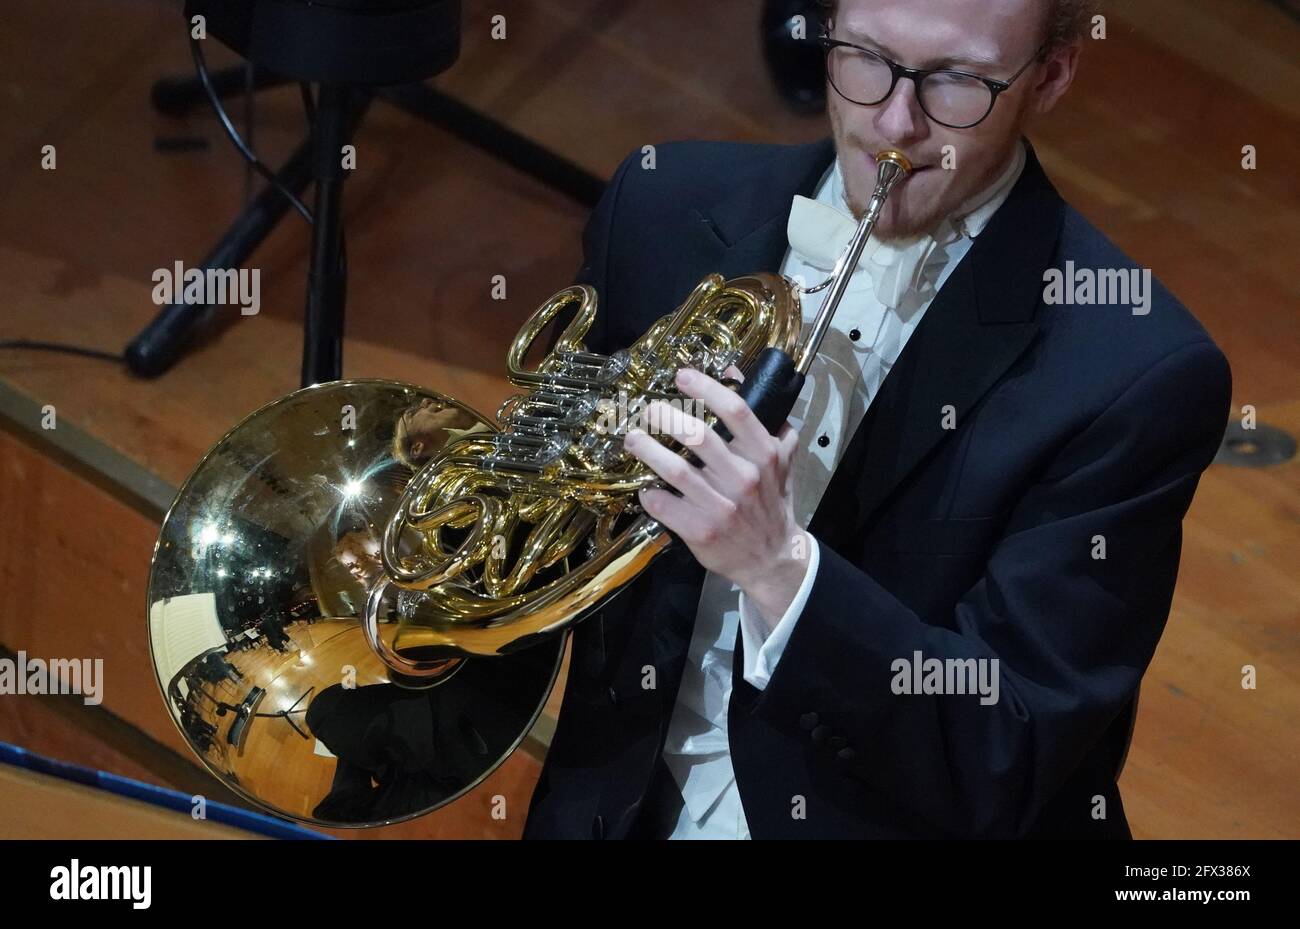 20 maggio 2021, Amburgo: Un musicista dell'Orchestra Sinfonica di Amburgo  suona il corno della Beethoven Symphony durante una prova di abbigliamento  nella Sala Grande al Laeiszhalle. La sera i Symphoniker suonano un